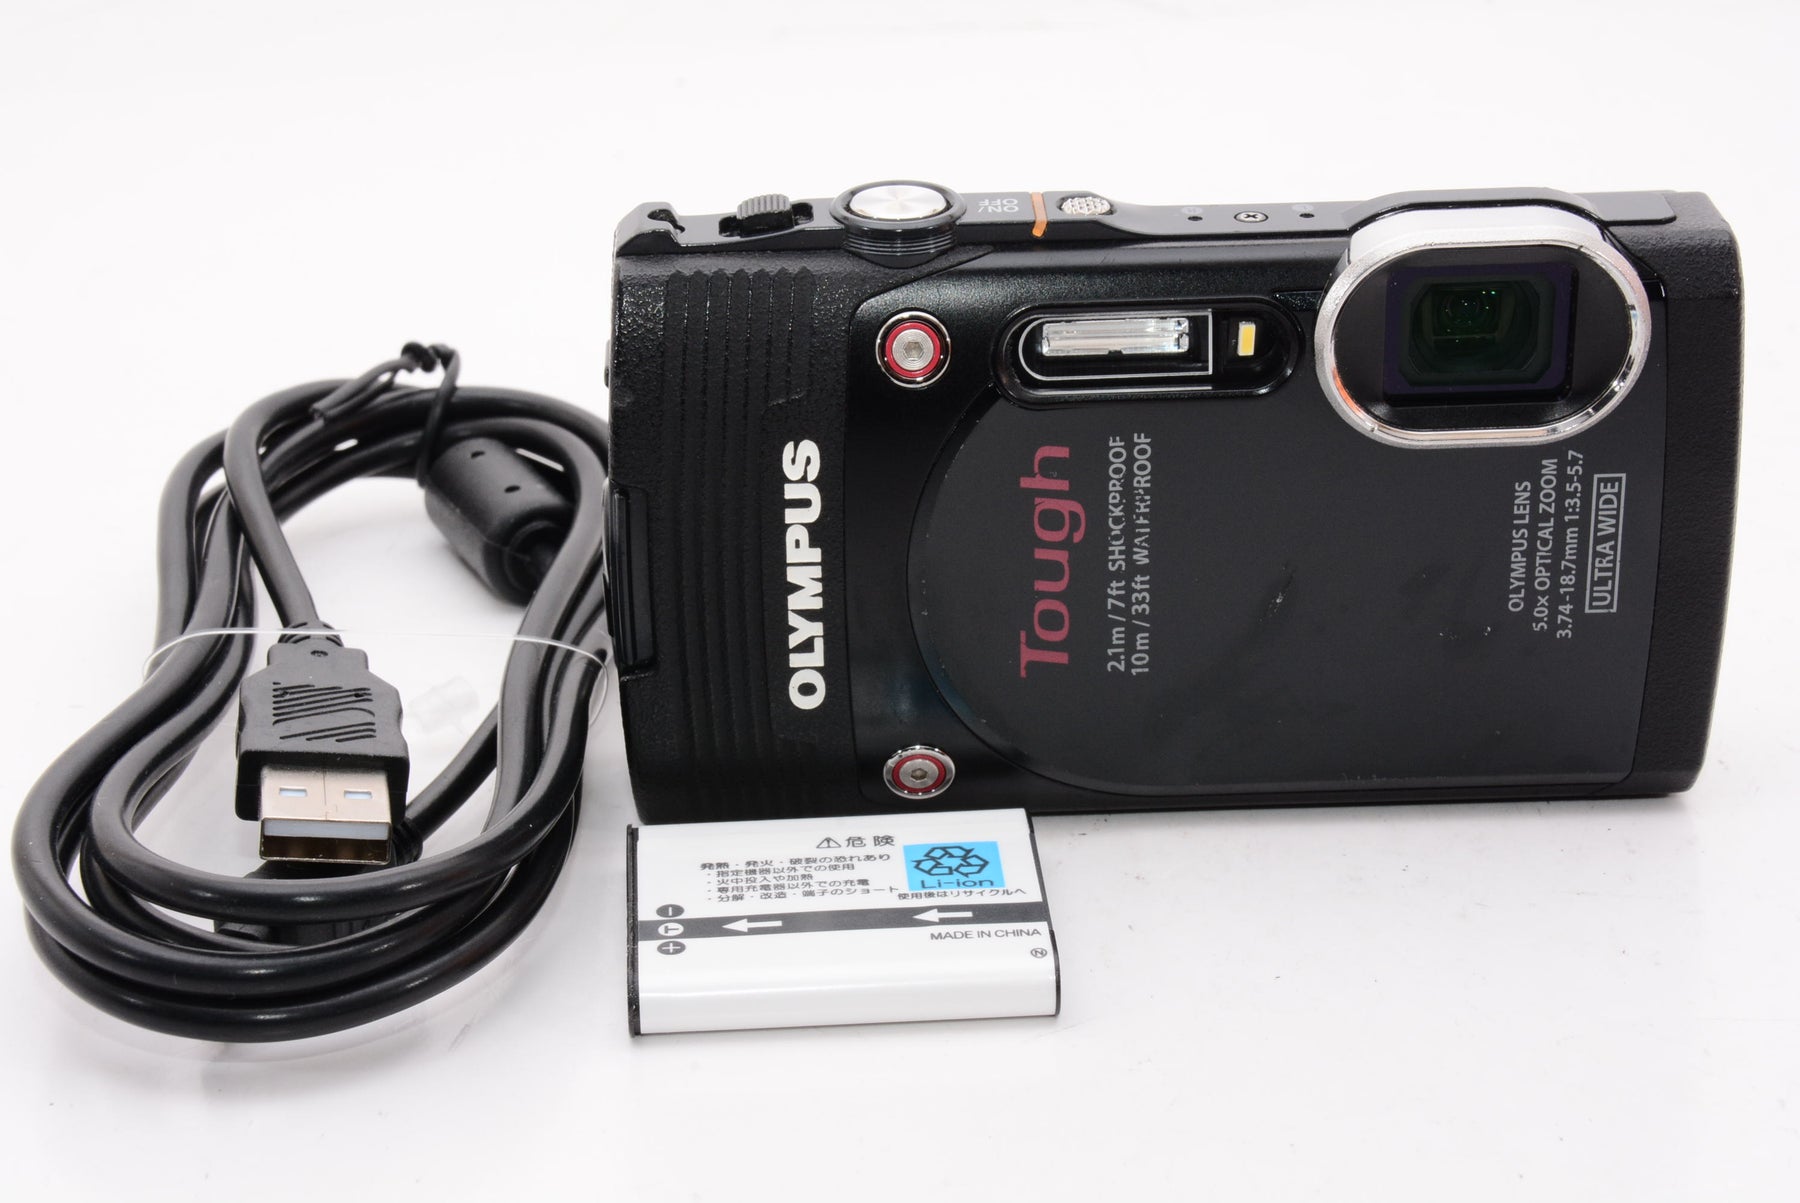 【外観特上級】OLYMPUS デジタルカメラ STYLUS TG-850 Tough ブラック 防水性能10m 可動式液晶モニター TG-850  Tough BLK